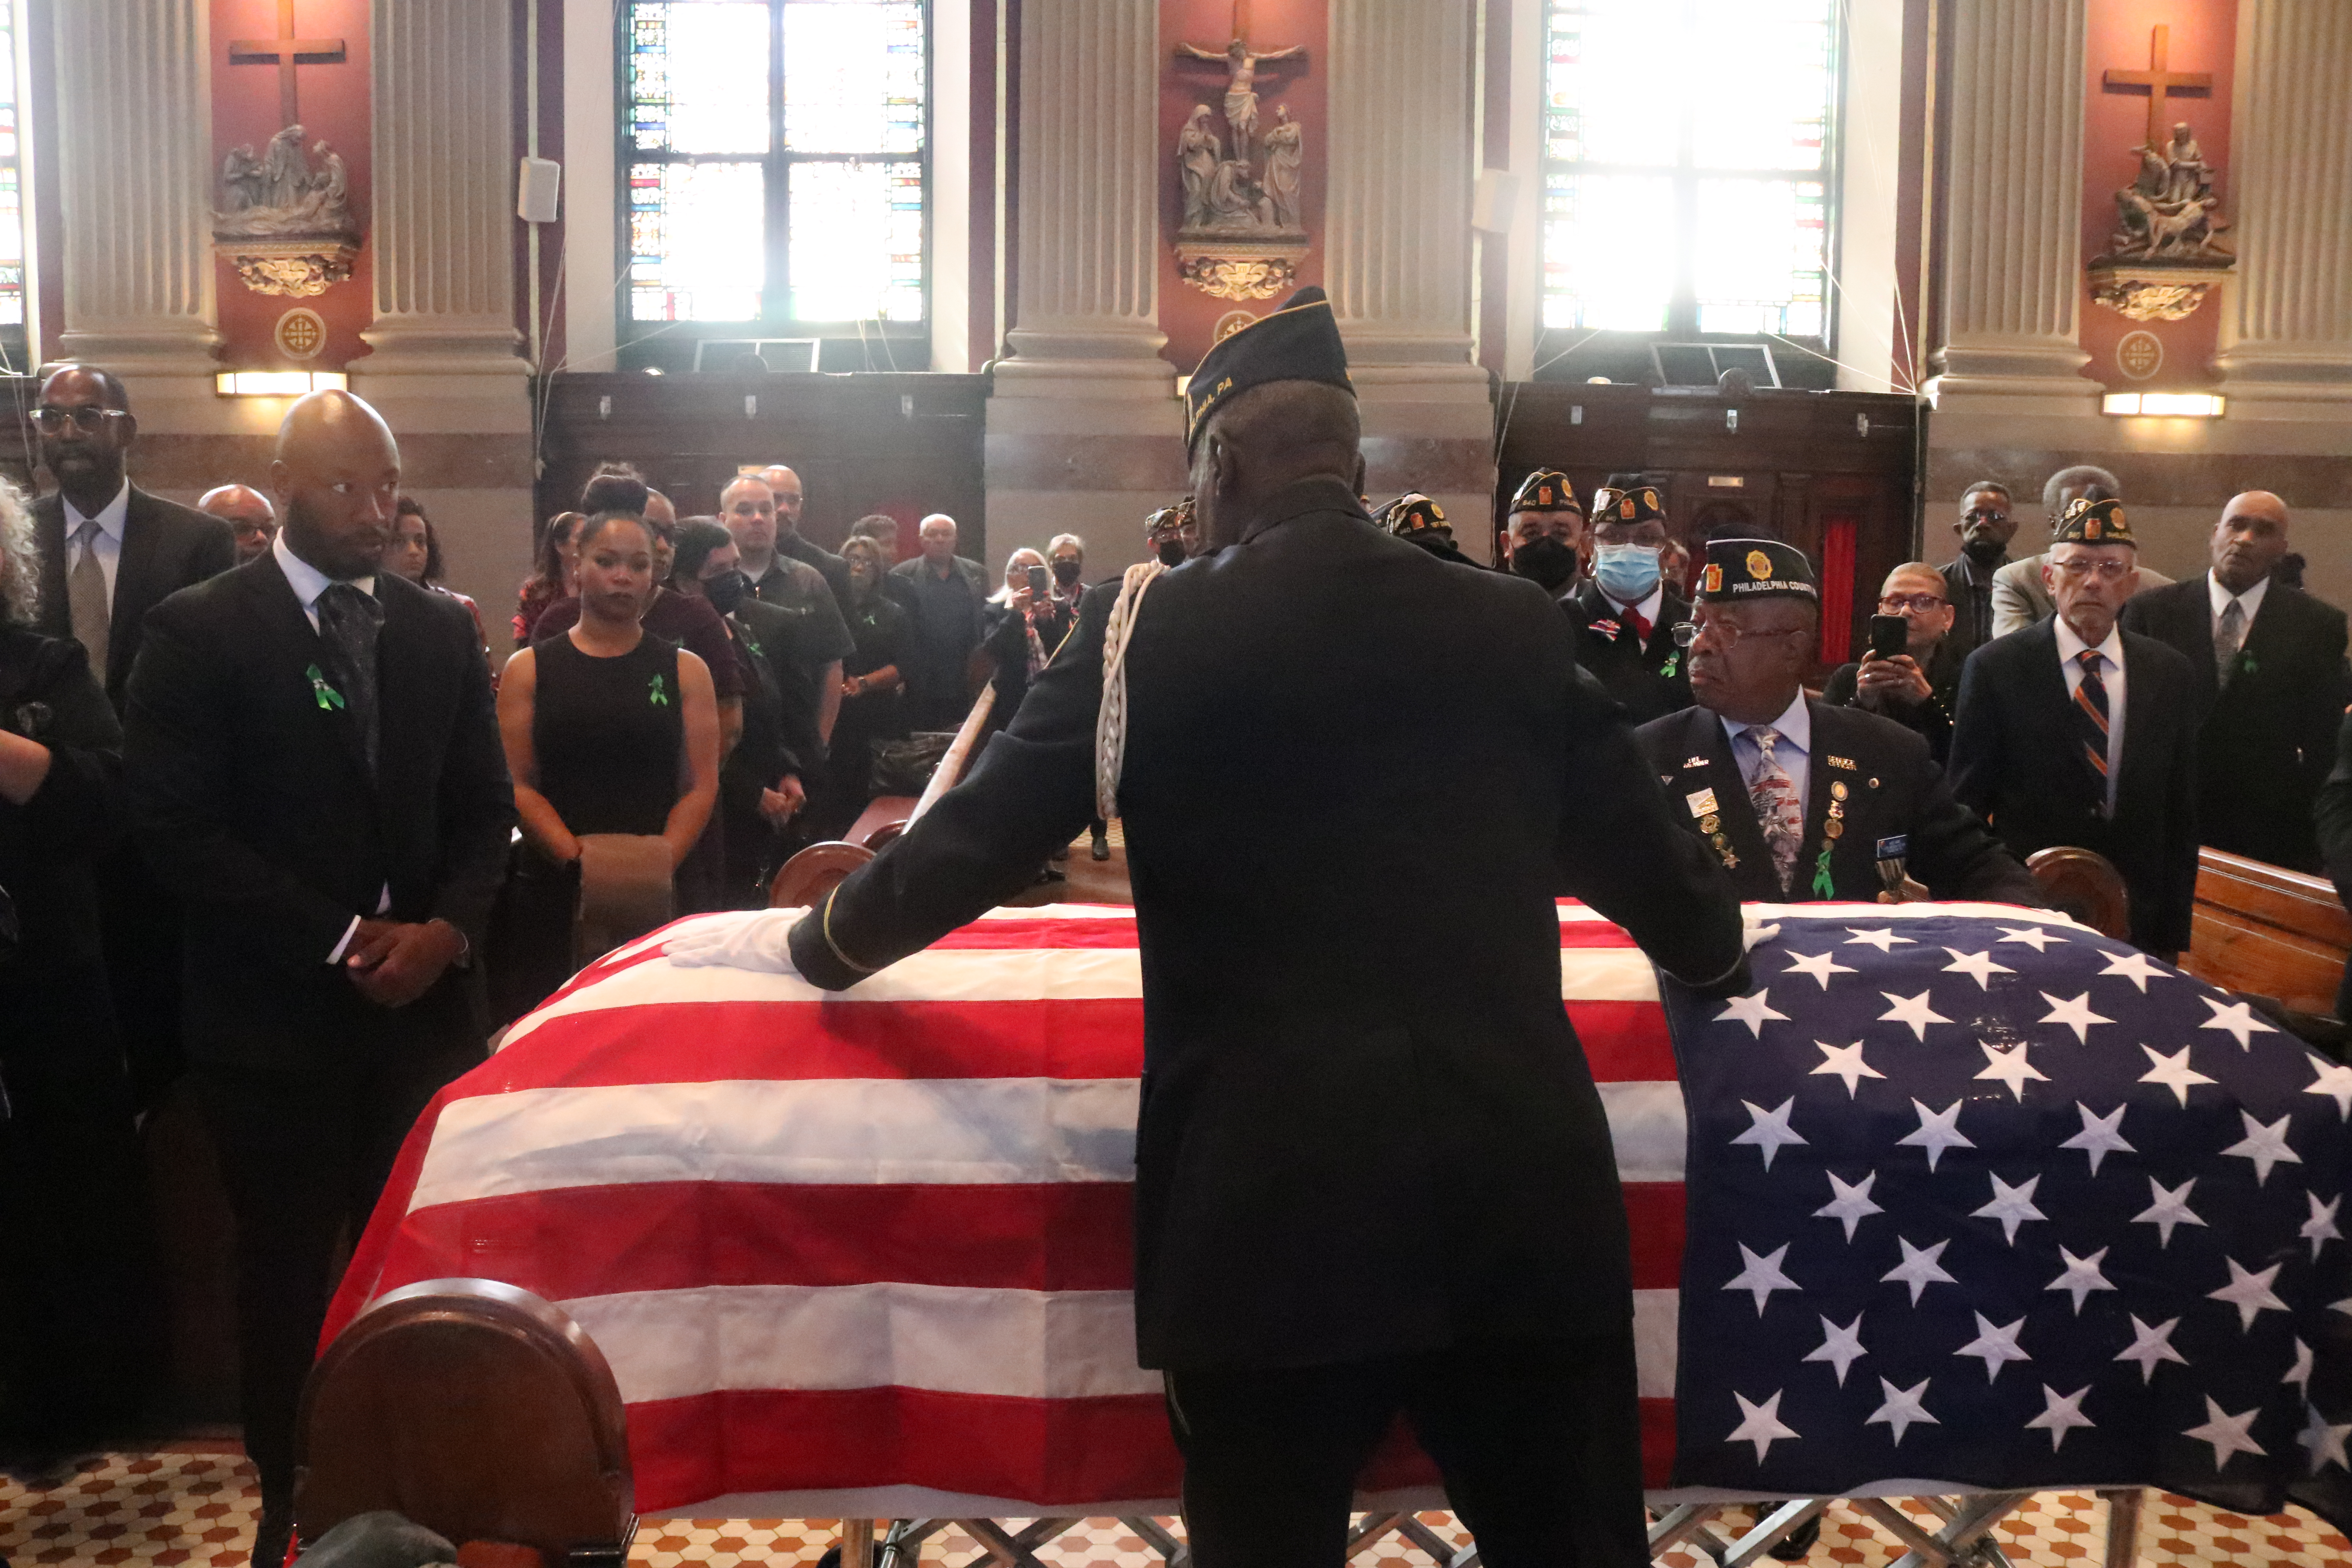 Pictured: Jesse Bermudez' casket enveloped in a U.S. flag.